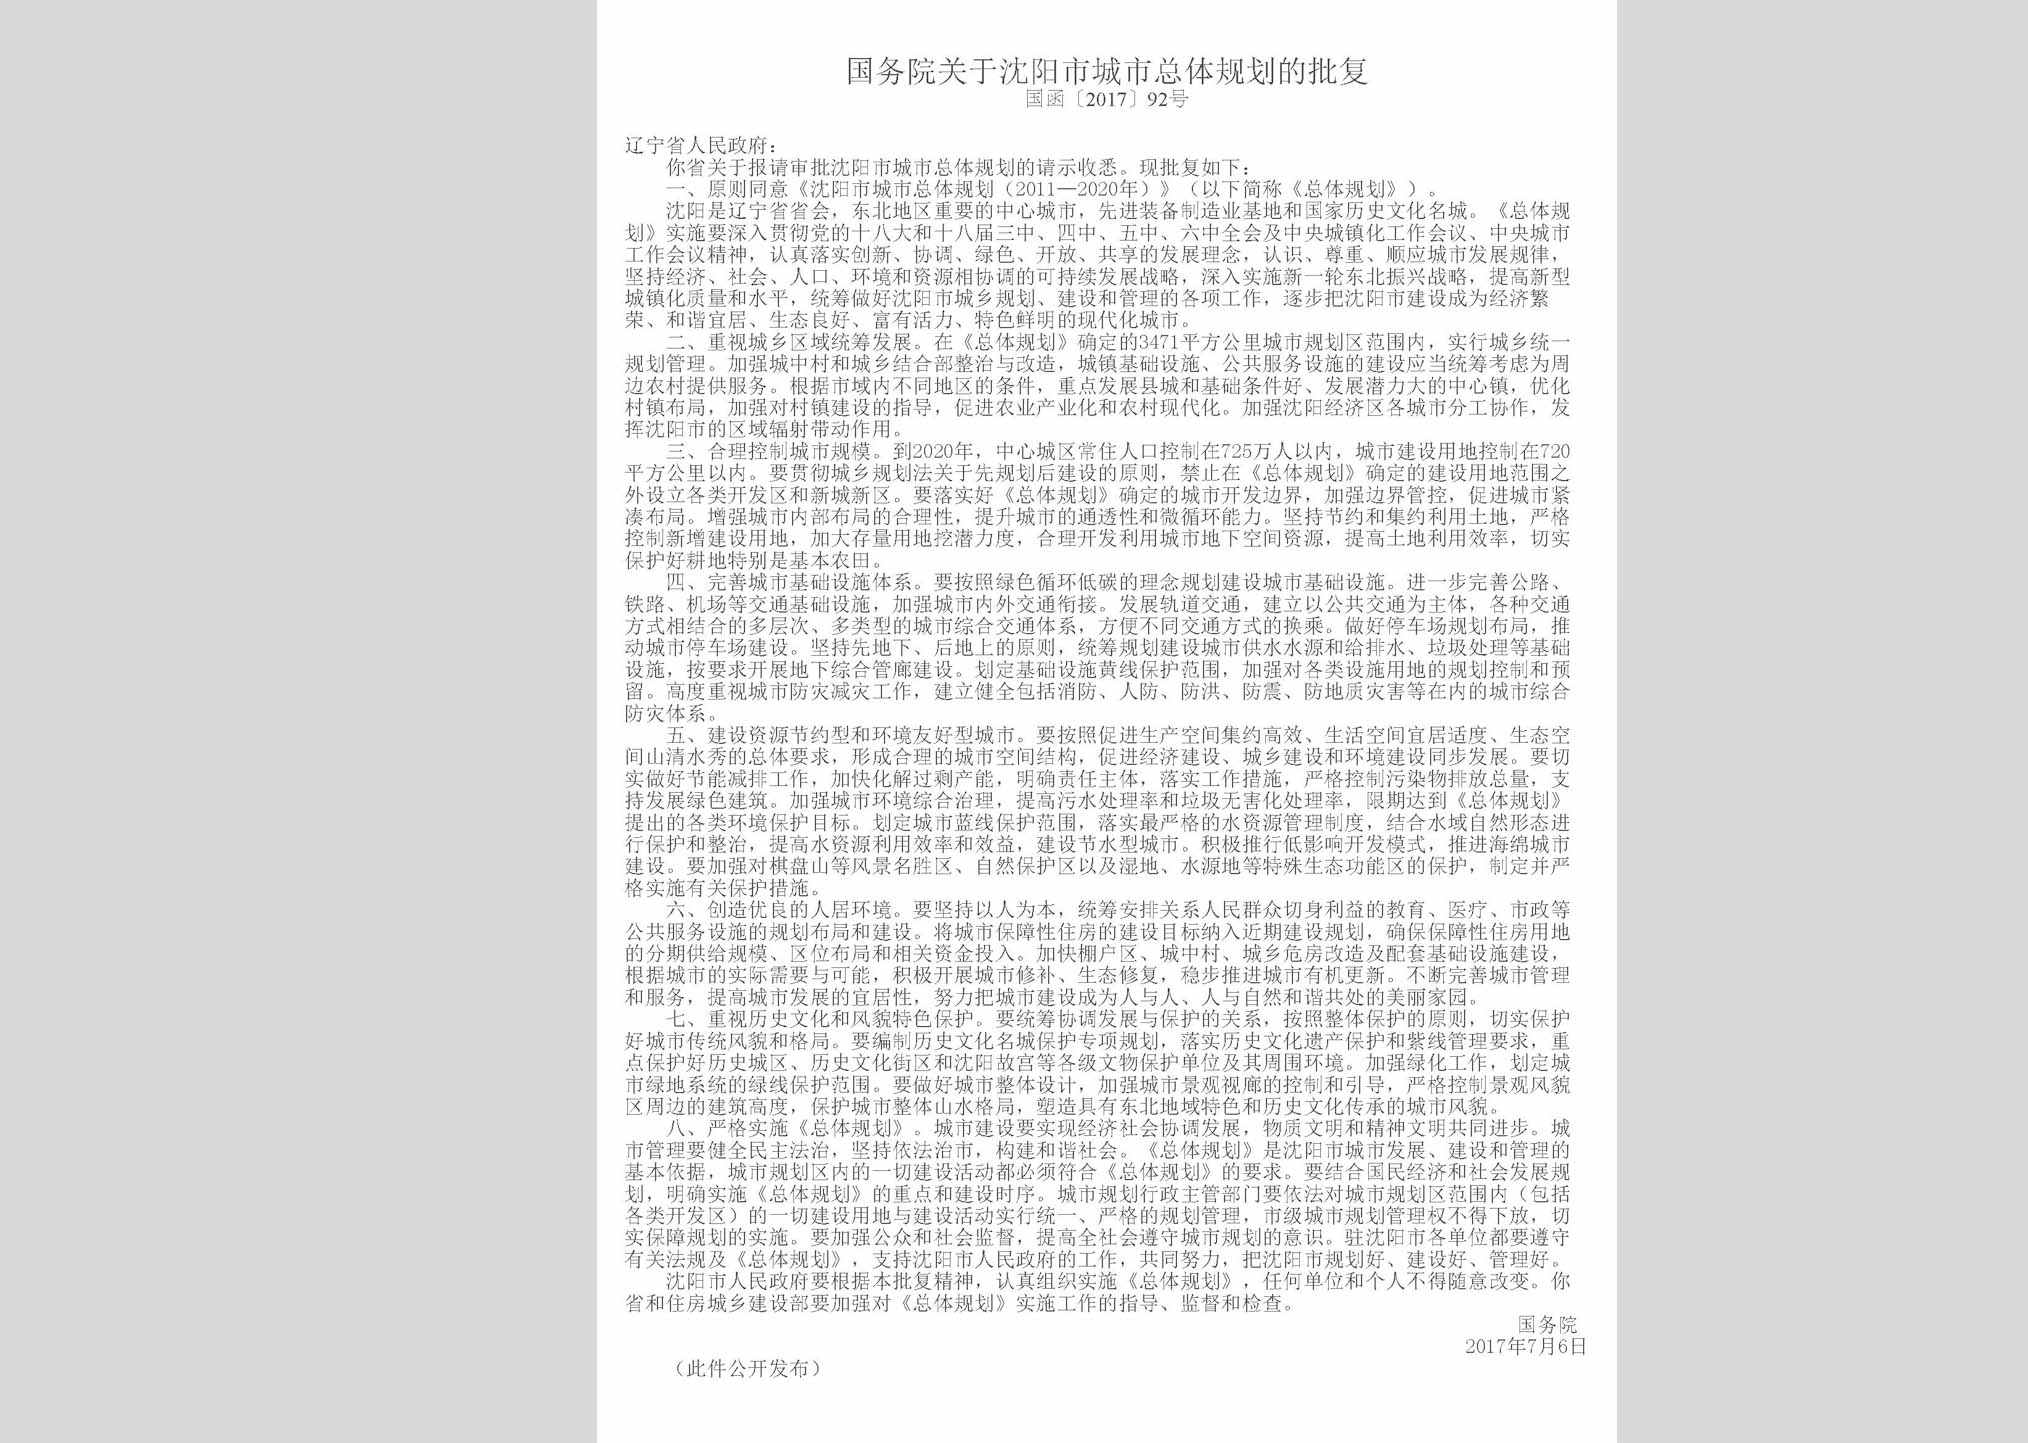 国函[2017]92号：国务院关于沈阳市城市总体规划的批复